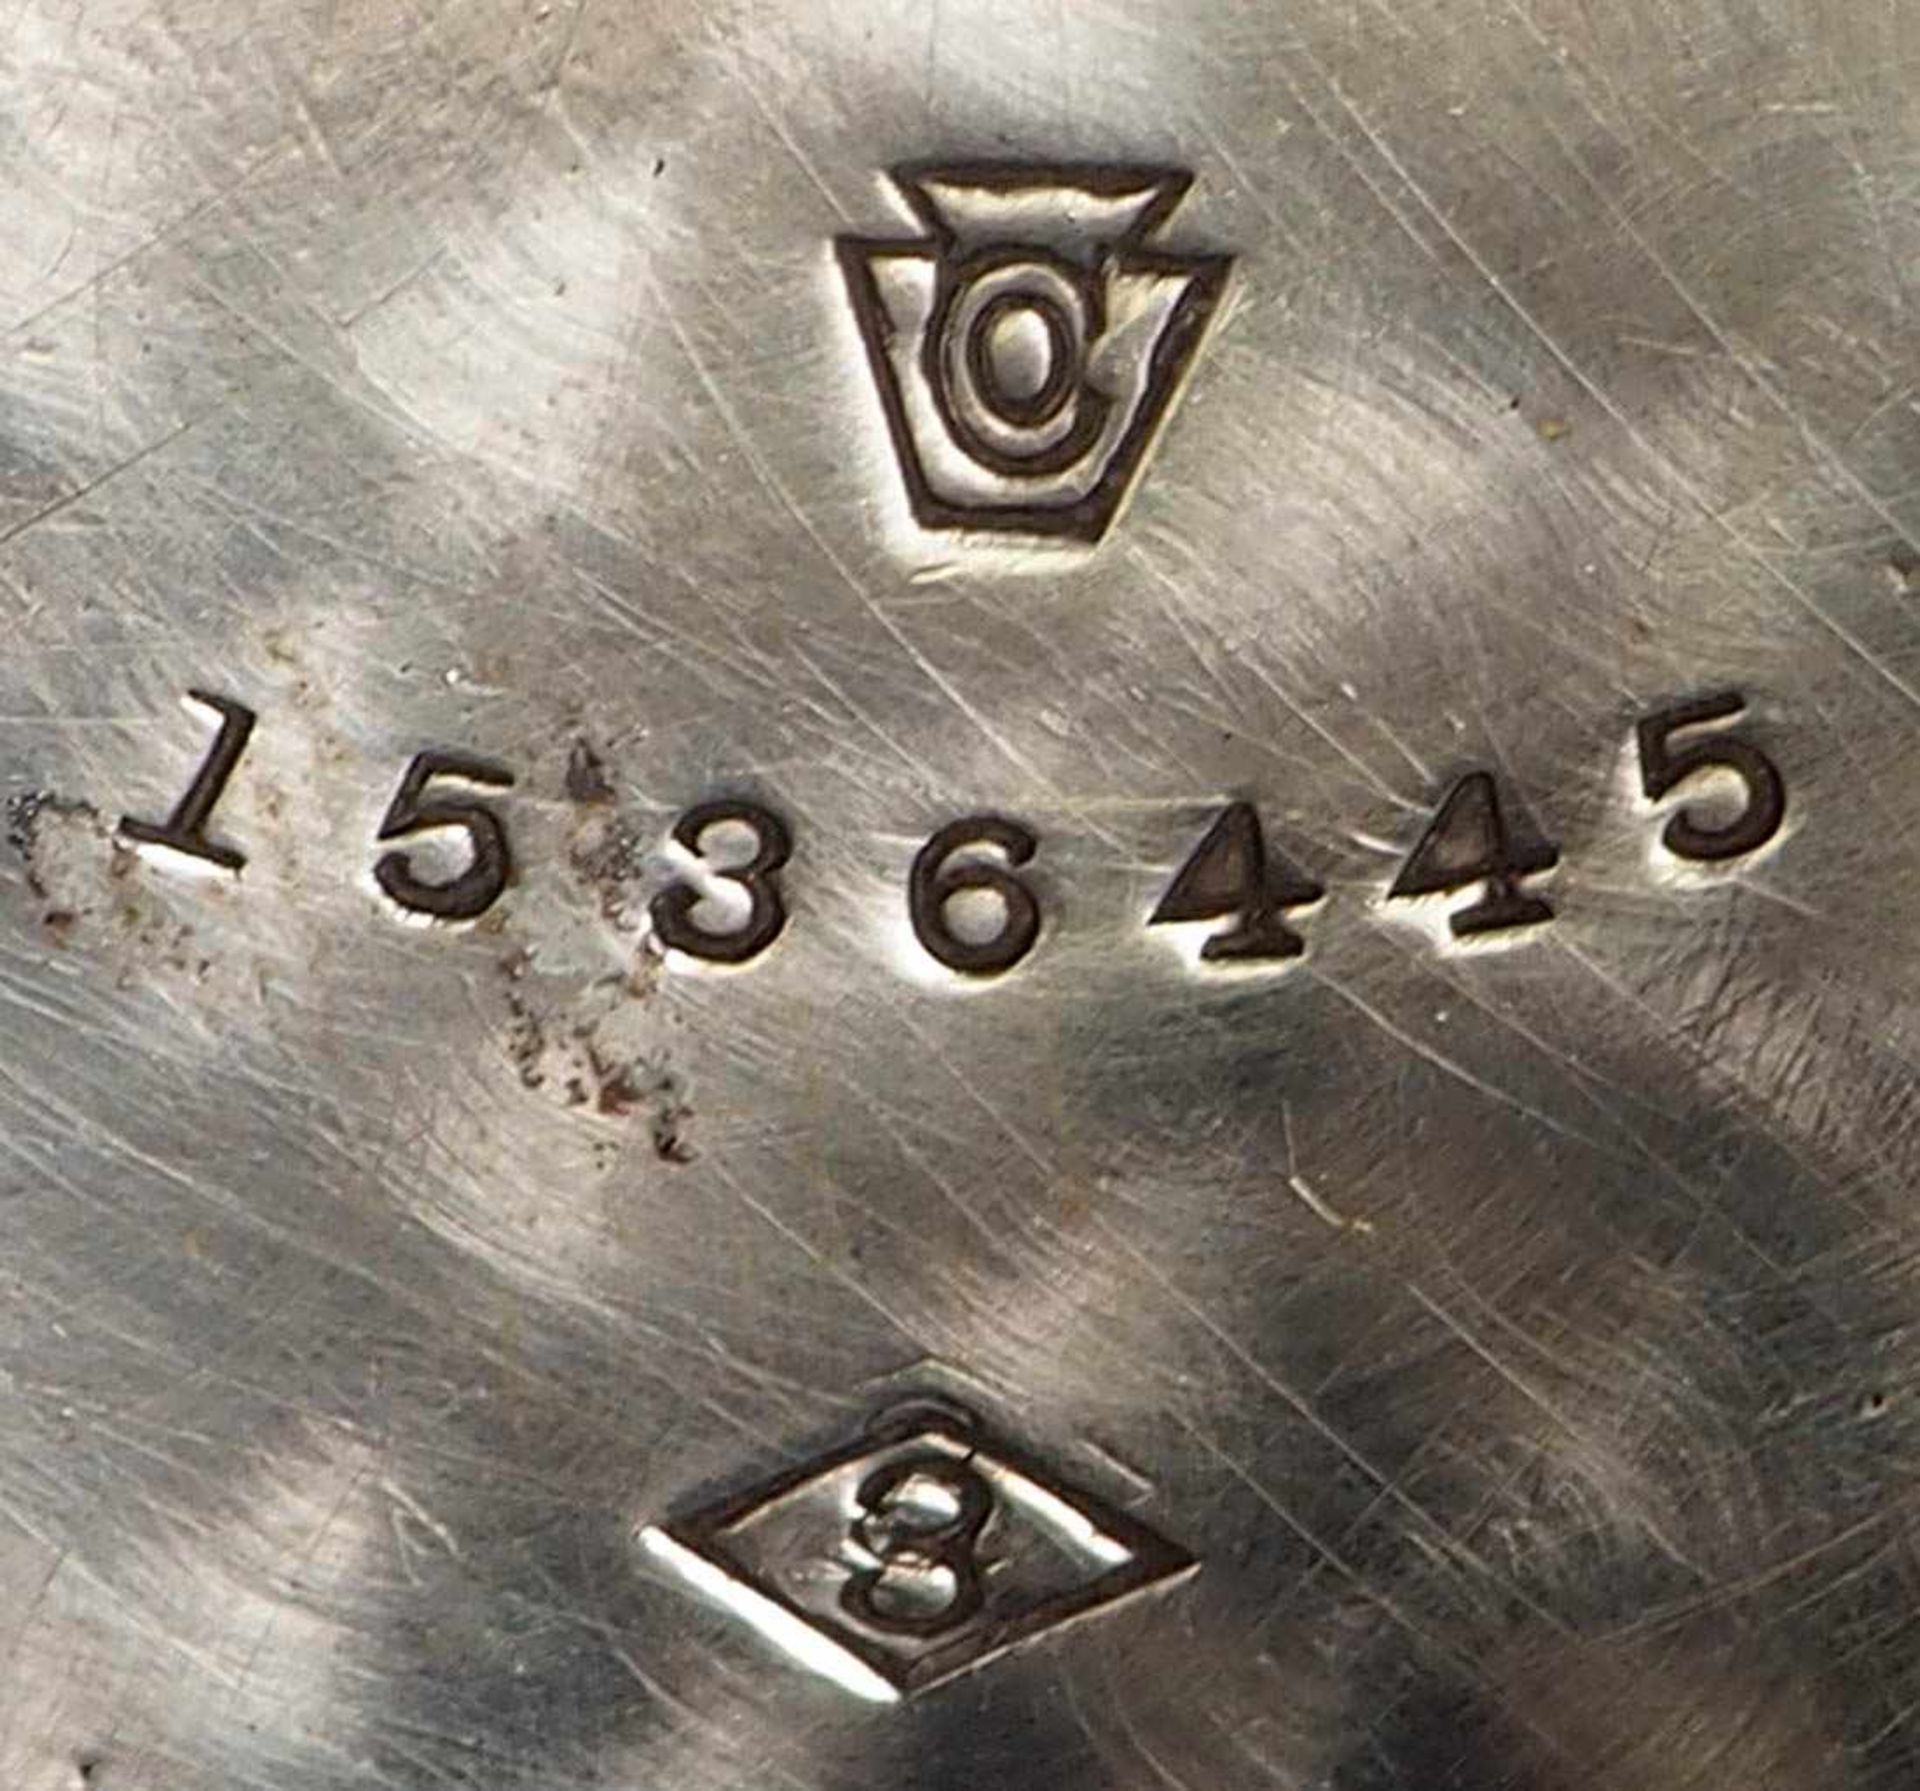 Herrentaschenuhr, Waltham, 19.Jhdt. Silbernes Savonettegehäuse, bez. "Coin silver", mit - Bild 4 aus 6